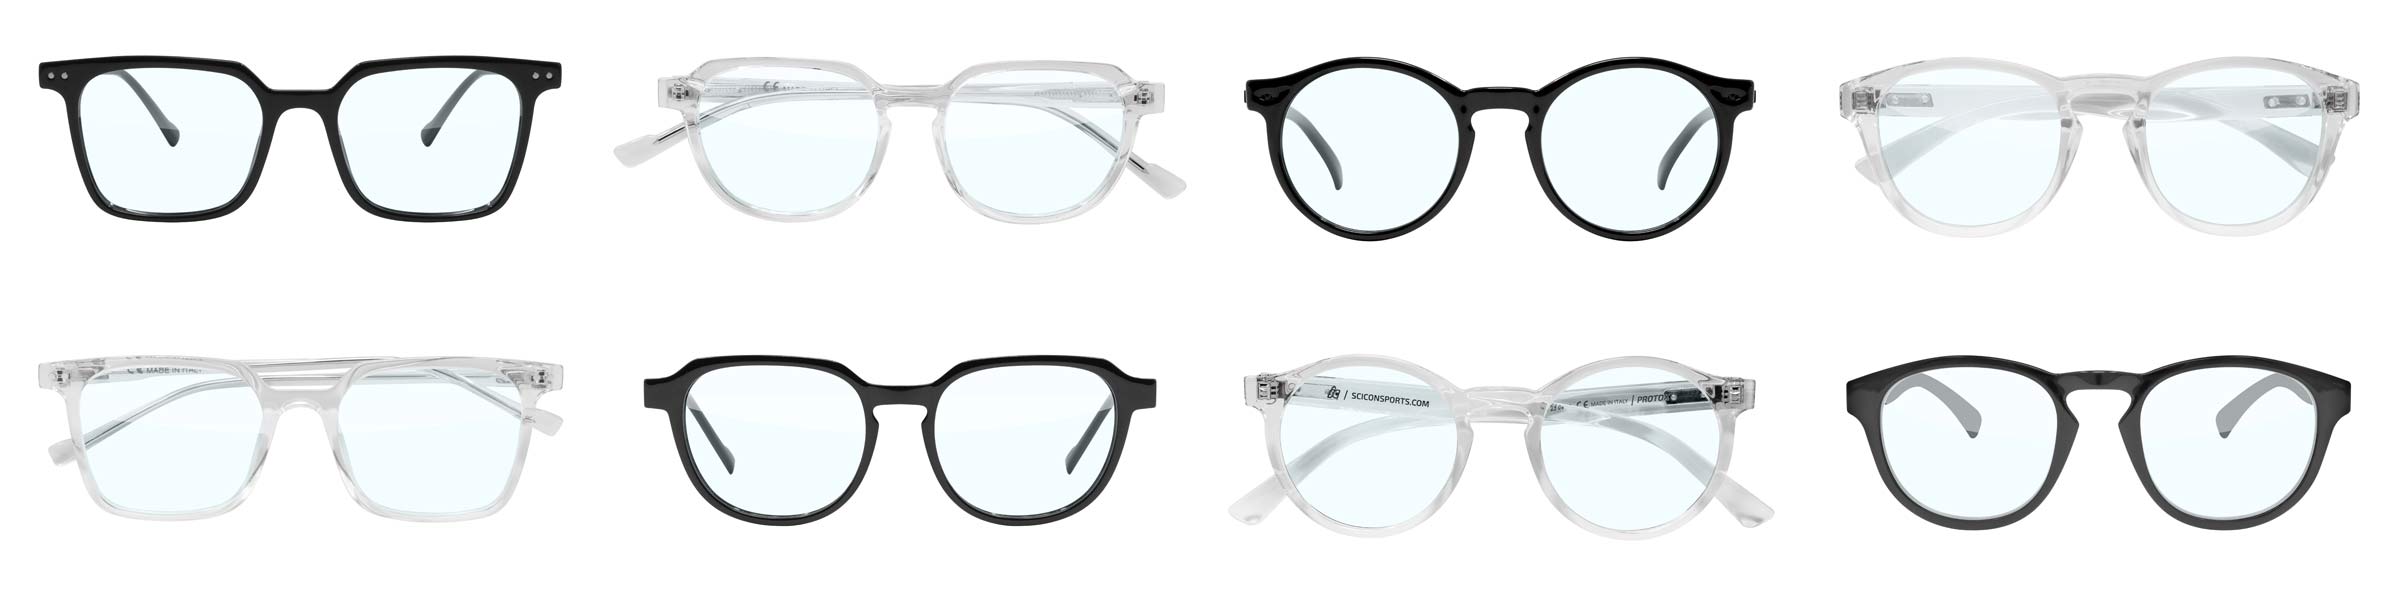 Sciocon Blue Zero glasses off-the-bike, reduce screen time fatigue, Vertec, Vertex, Protox, Protom